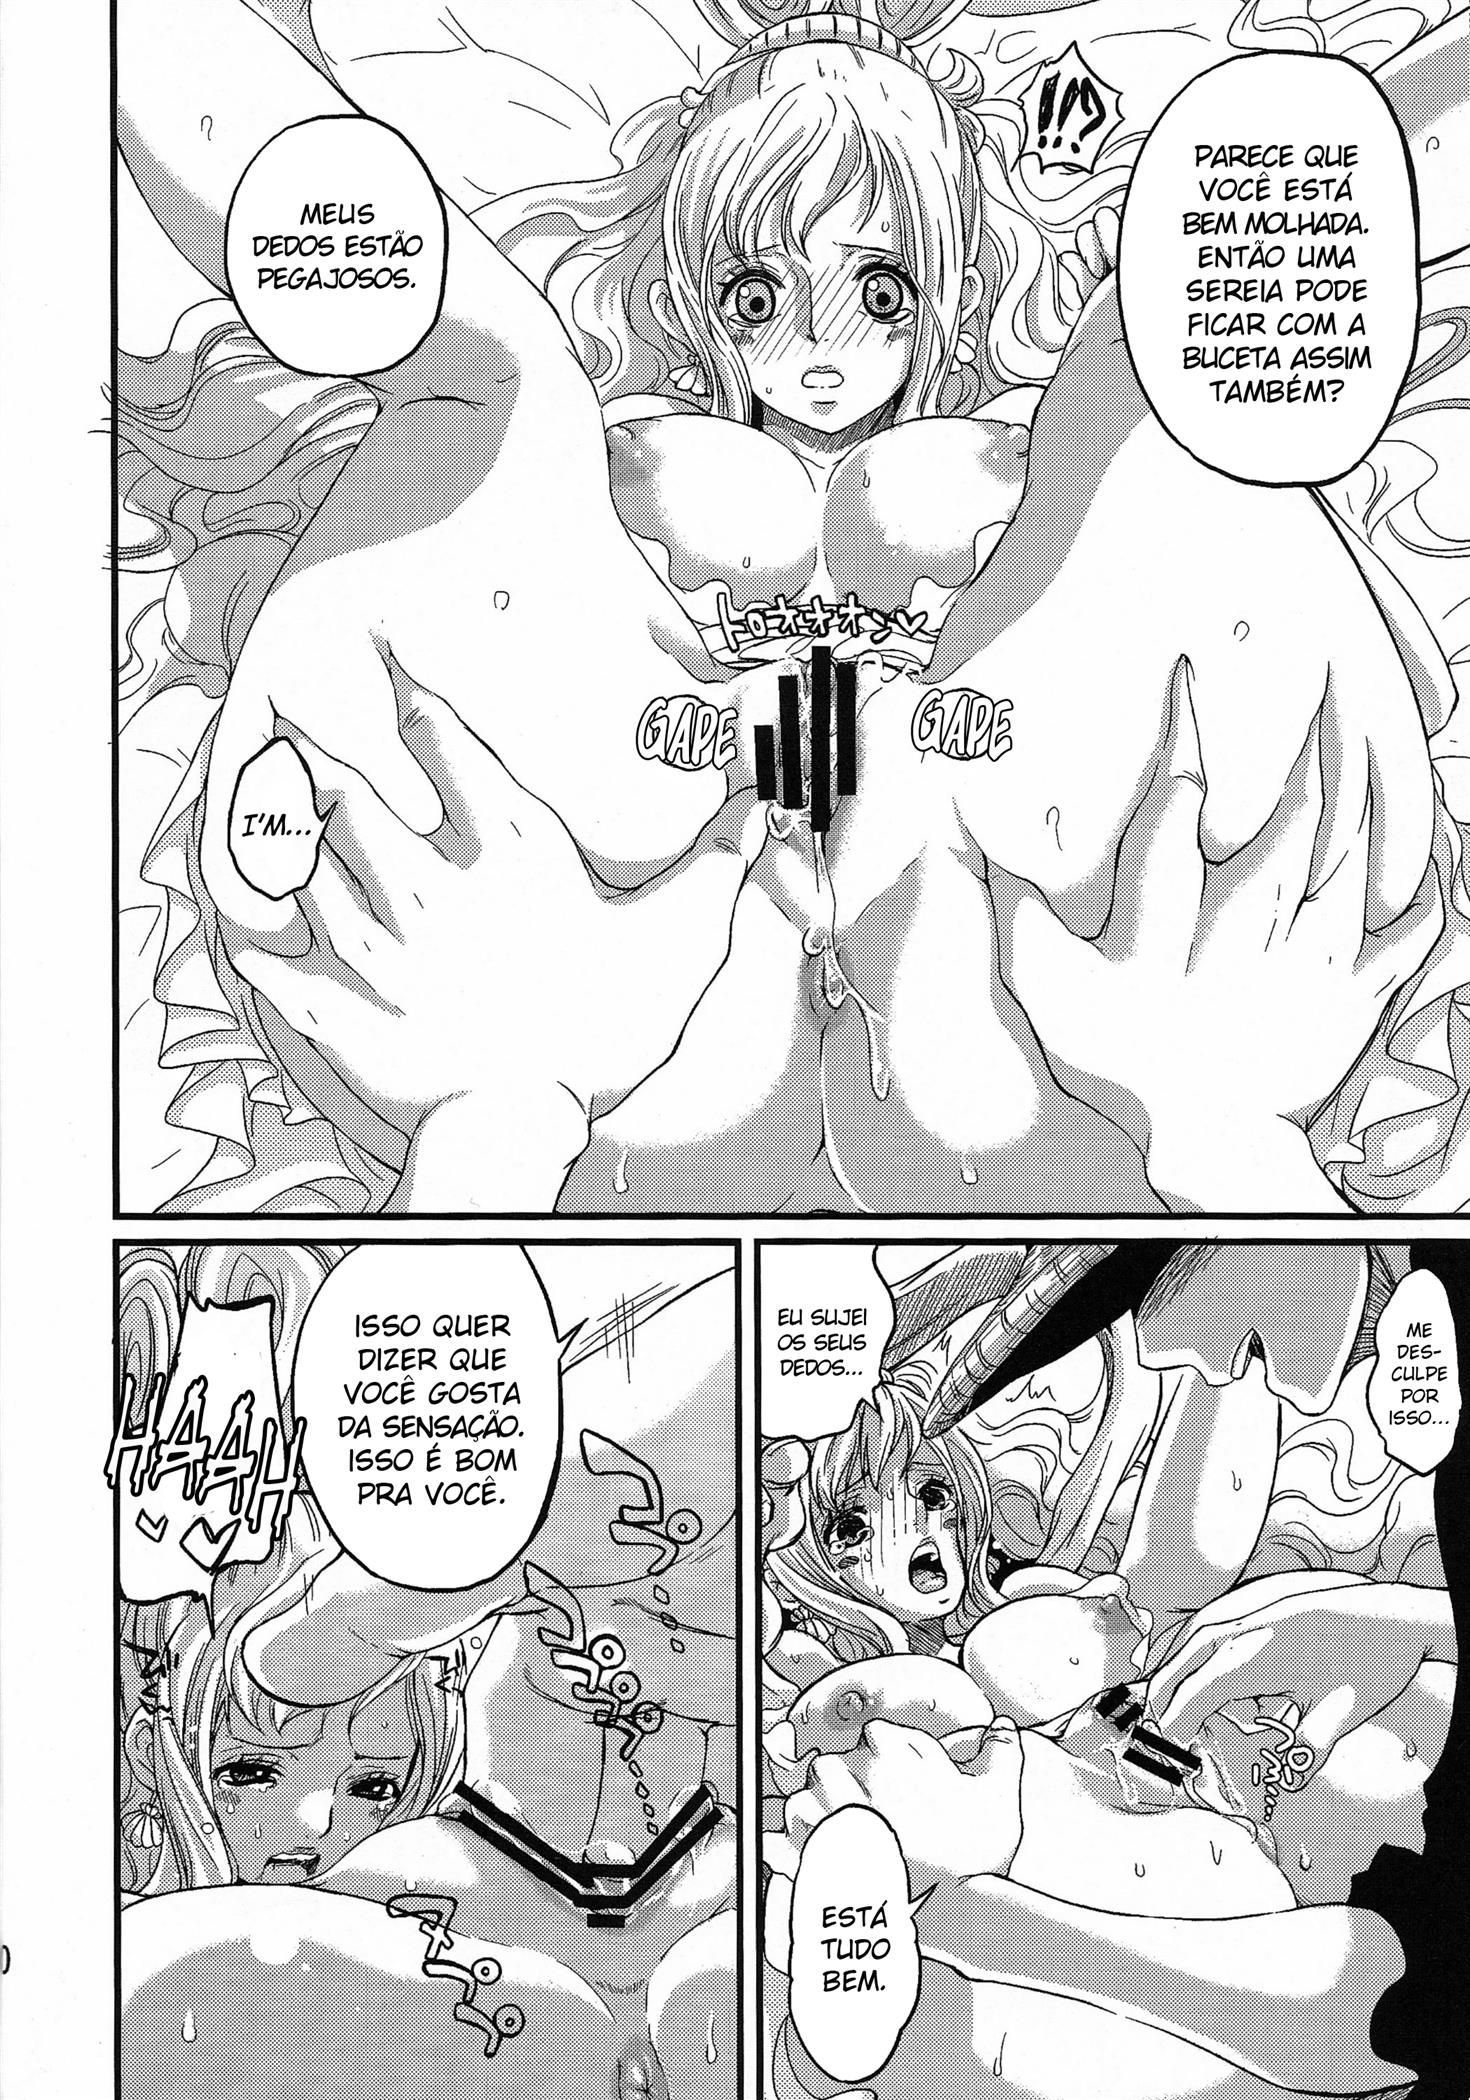 Primeira vez da princesa sereia Shirahoshi com Luffy (10)